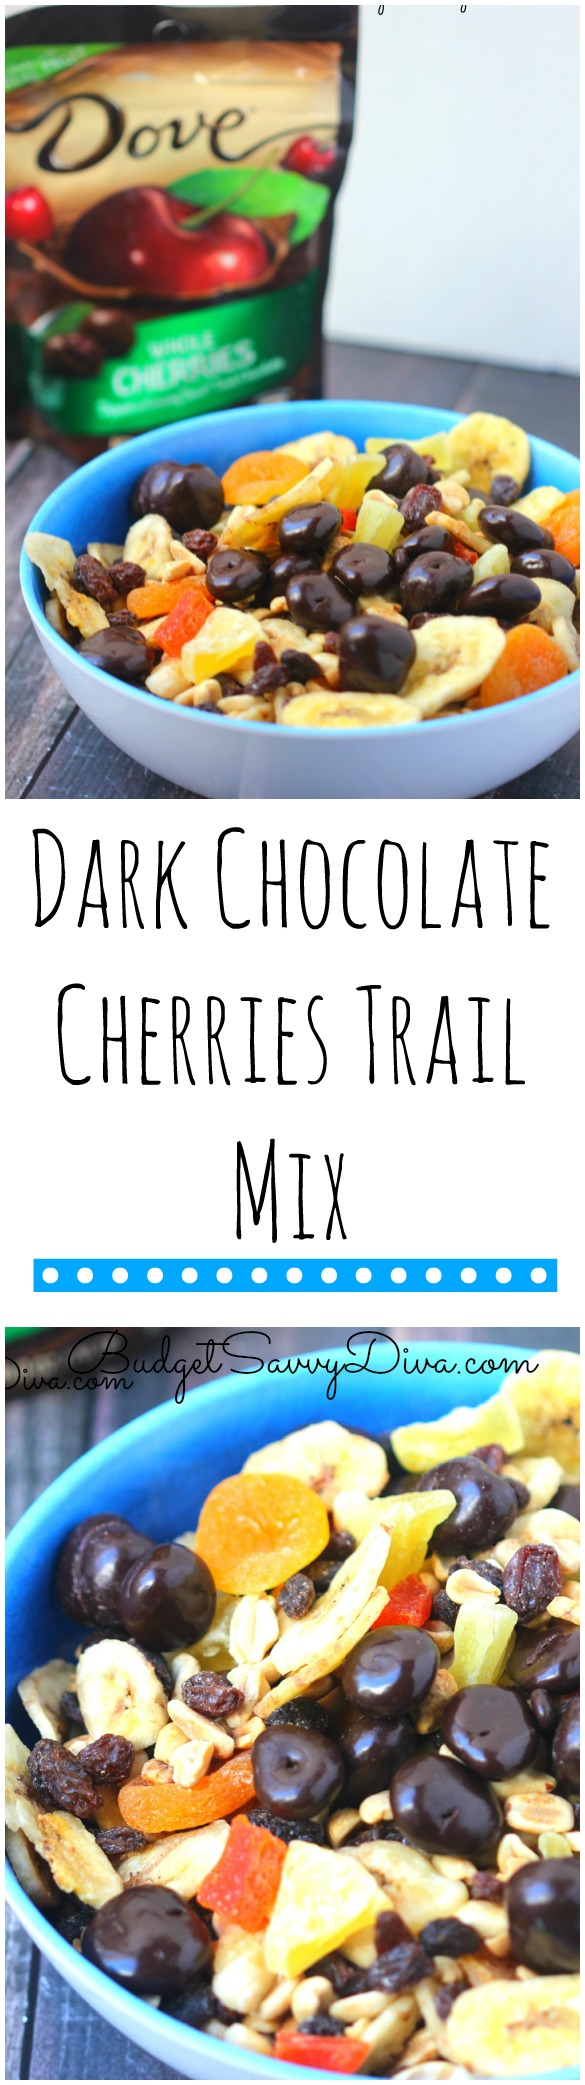 Dark Chocolate Cherries Trail Mix Recipe 